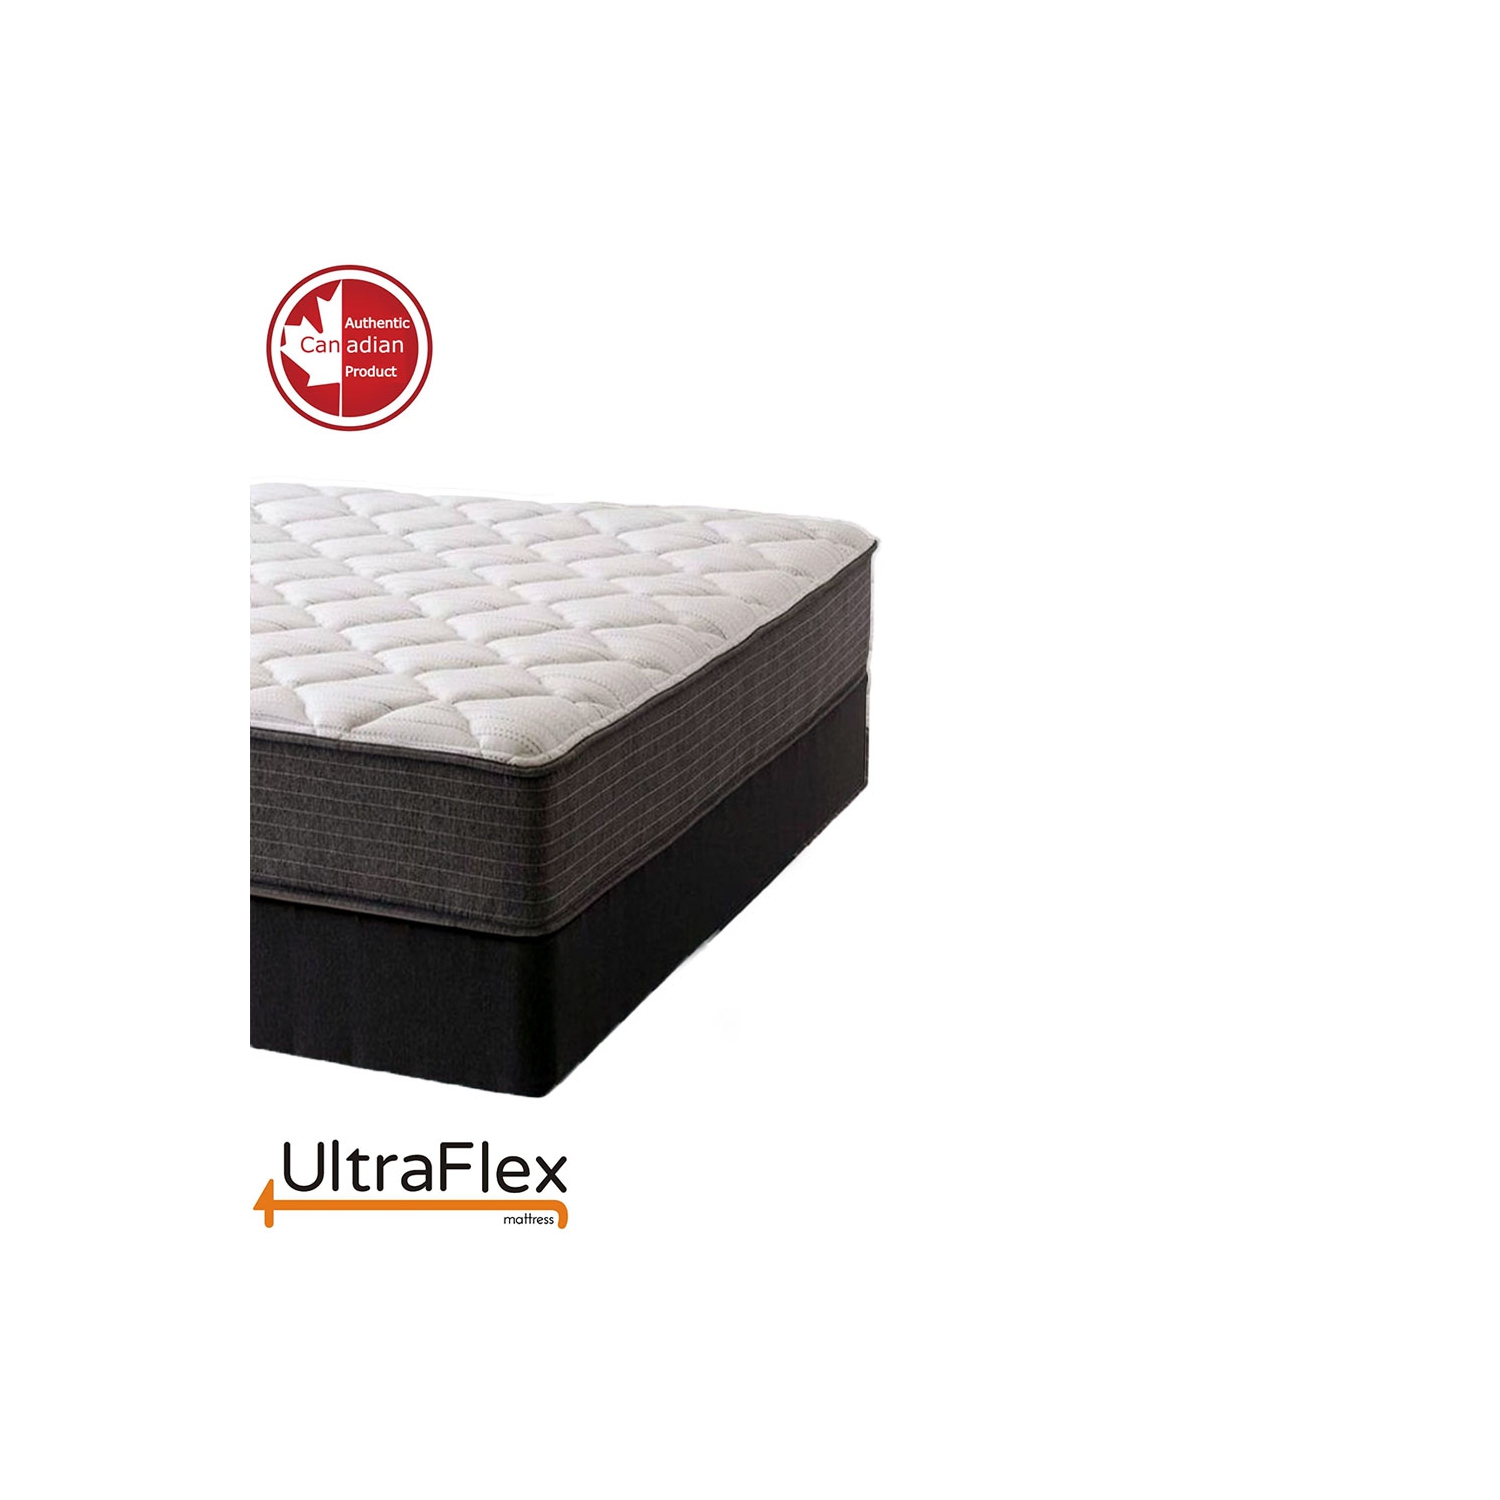 UltraFlex ASPIRE- Supportive Comfort Foam Mattress for Pressure